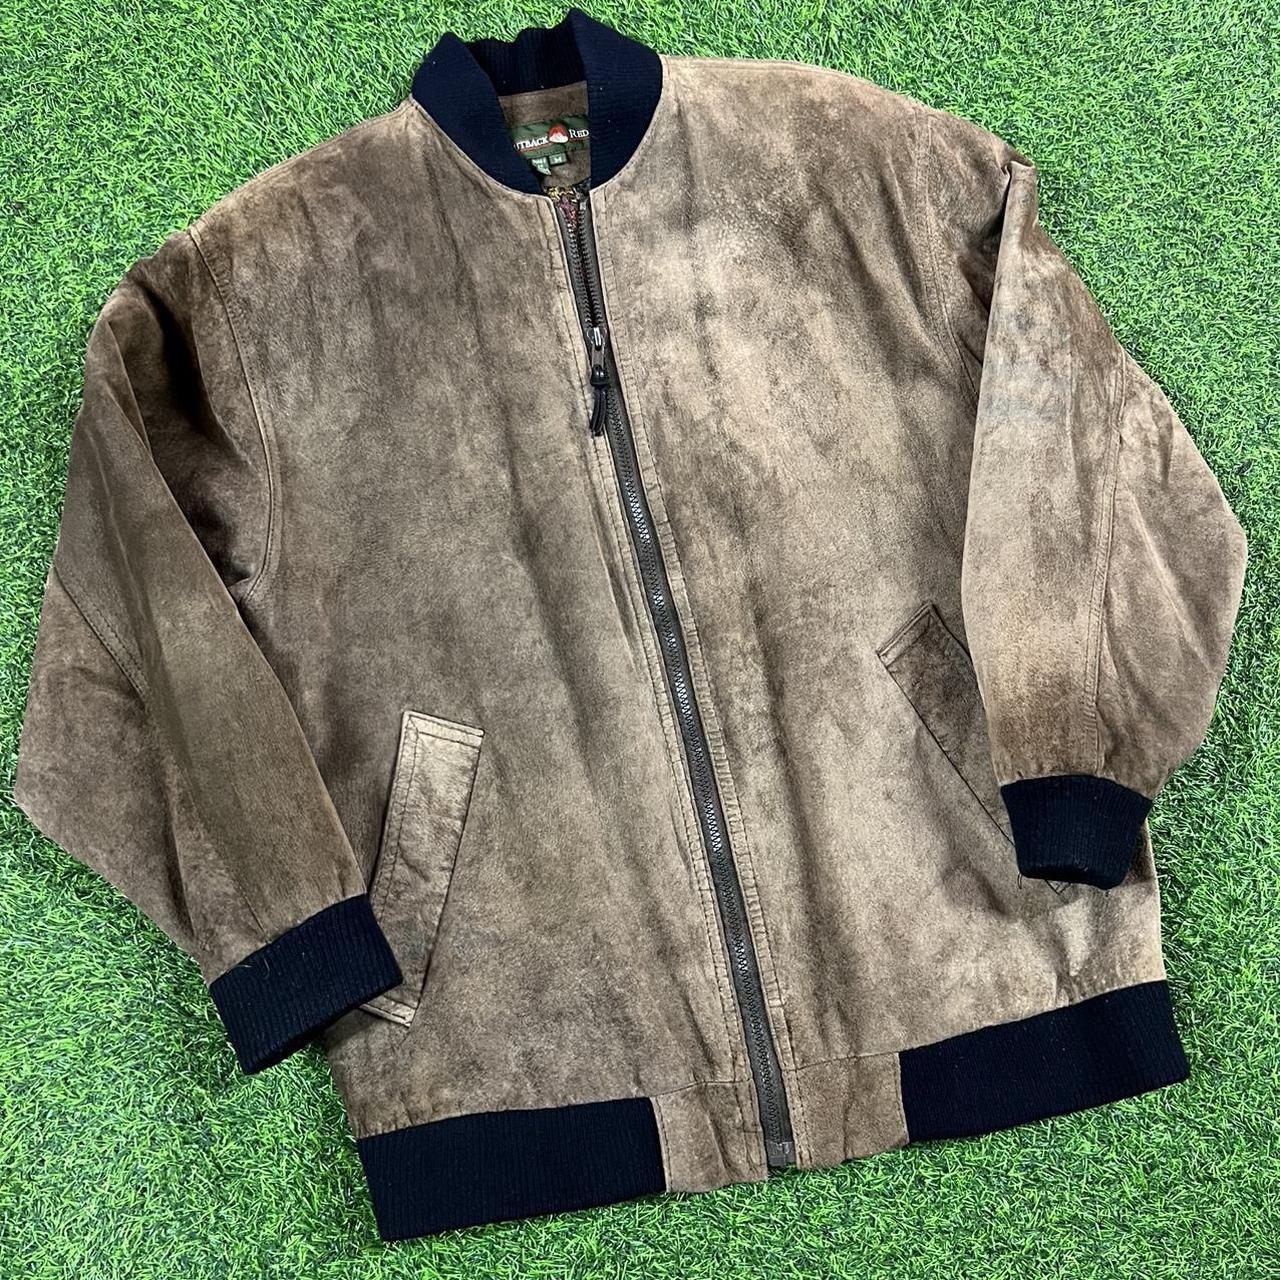 Vintage brown leather bomber jacket G3 earth tone... - Depop